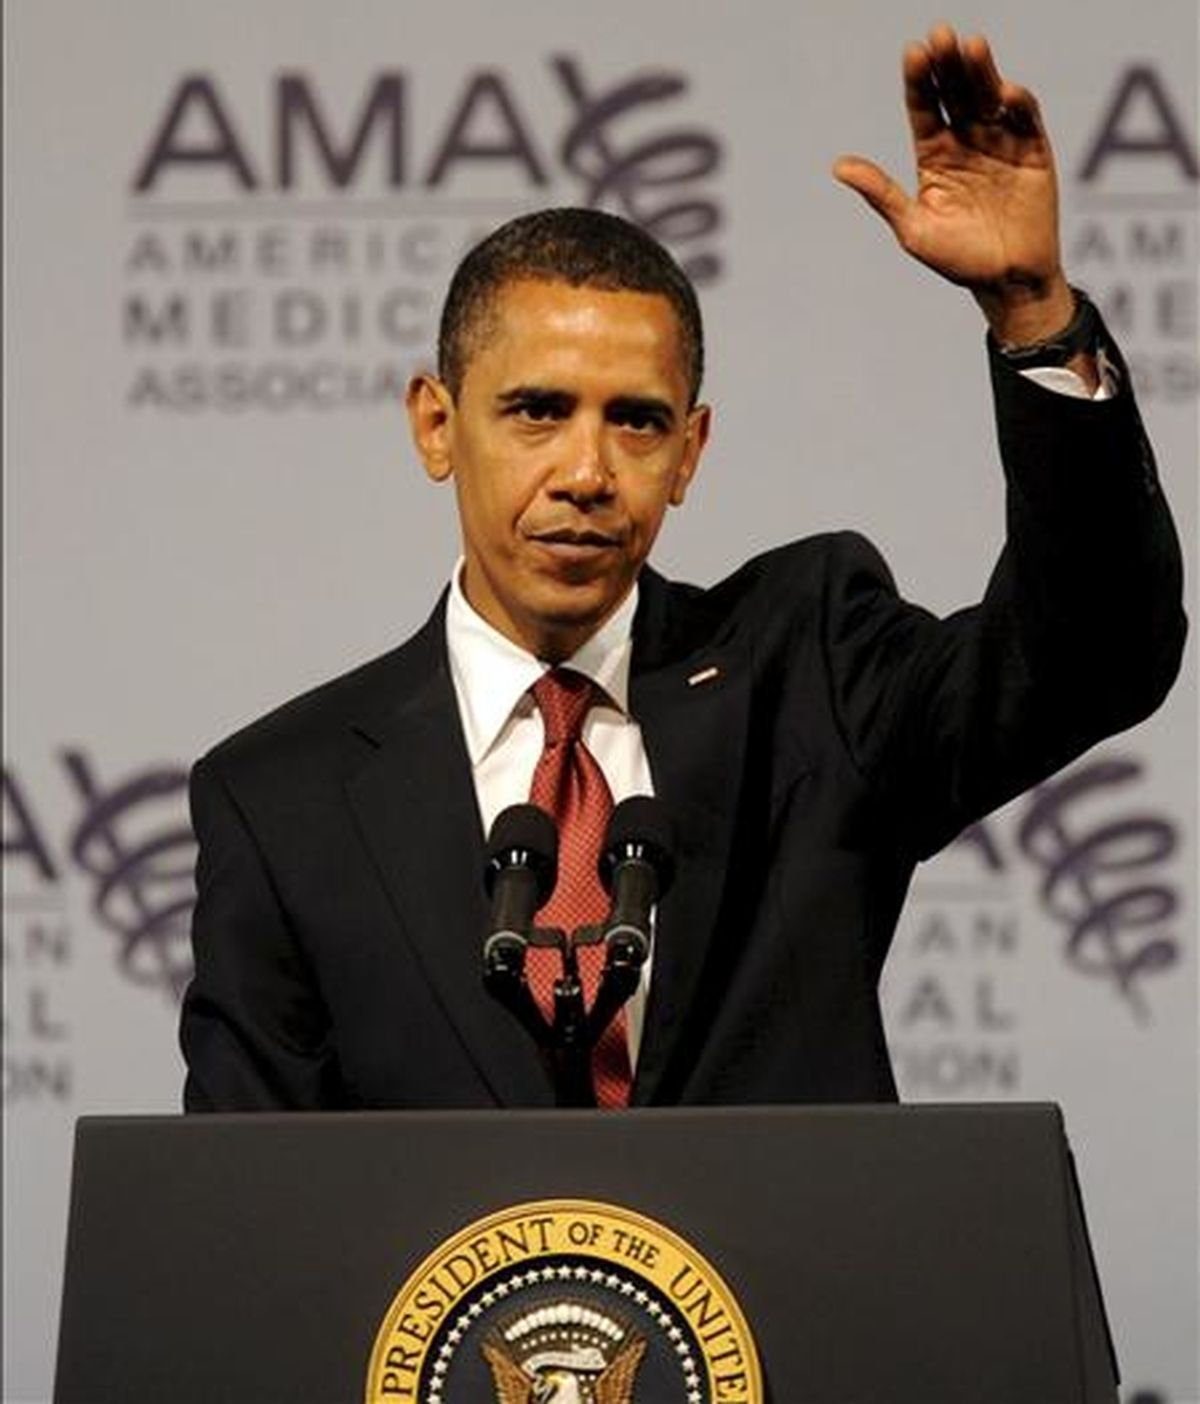 El presidente de Estados Unidos, Barack Obama, ofrece un discurso durante ante la Asociación de Médicos de EE.UU, en Chicago. EFE